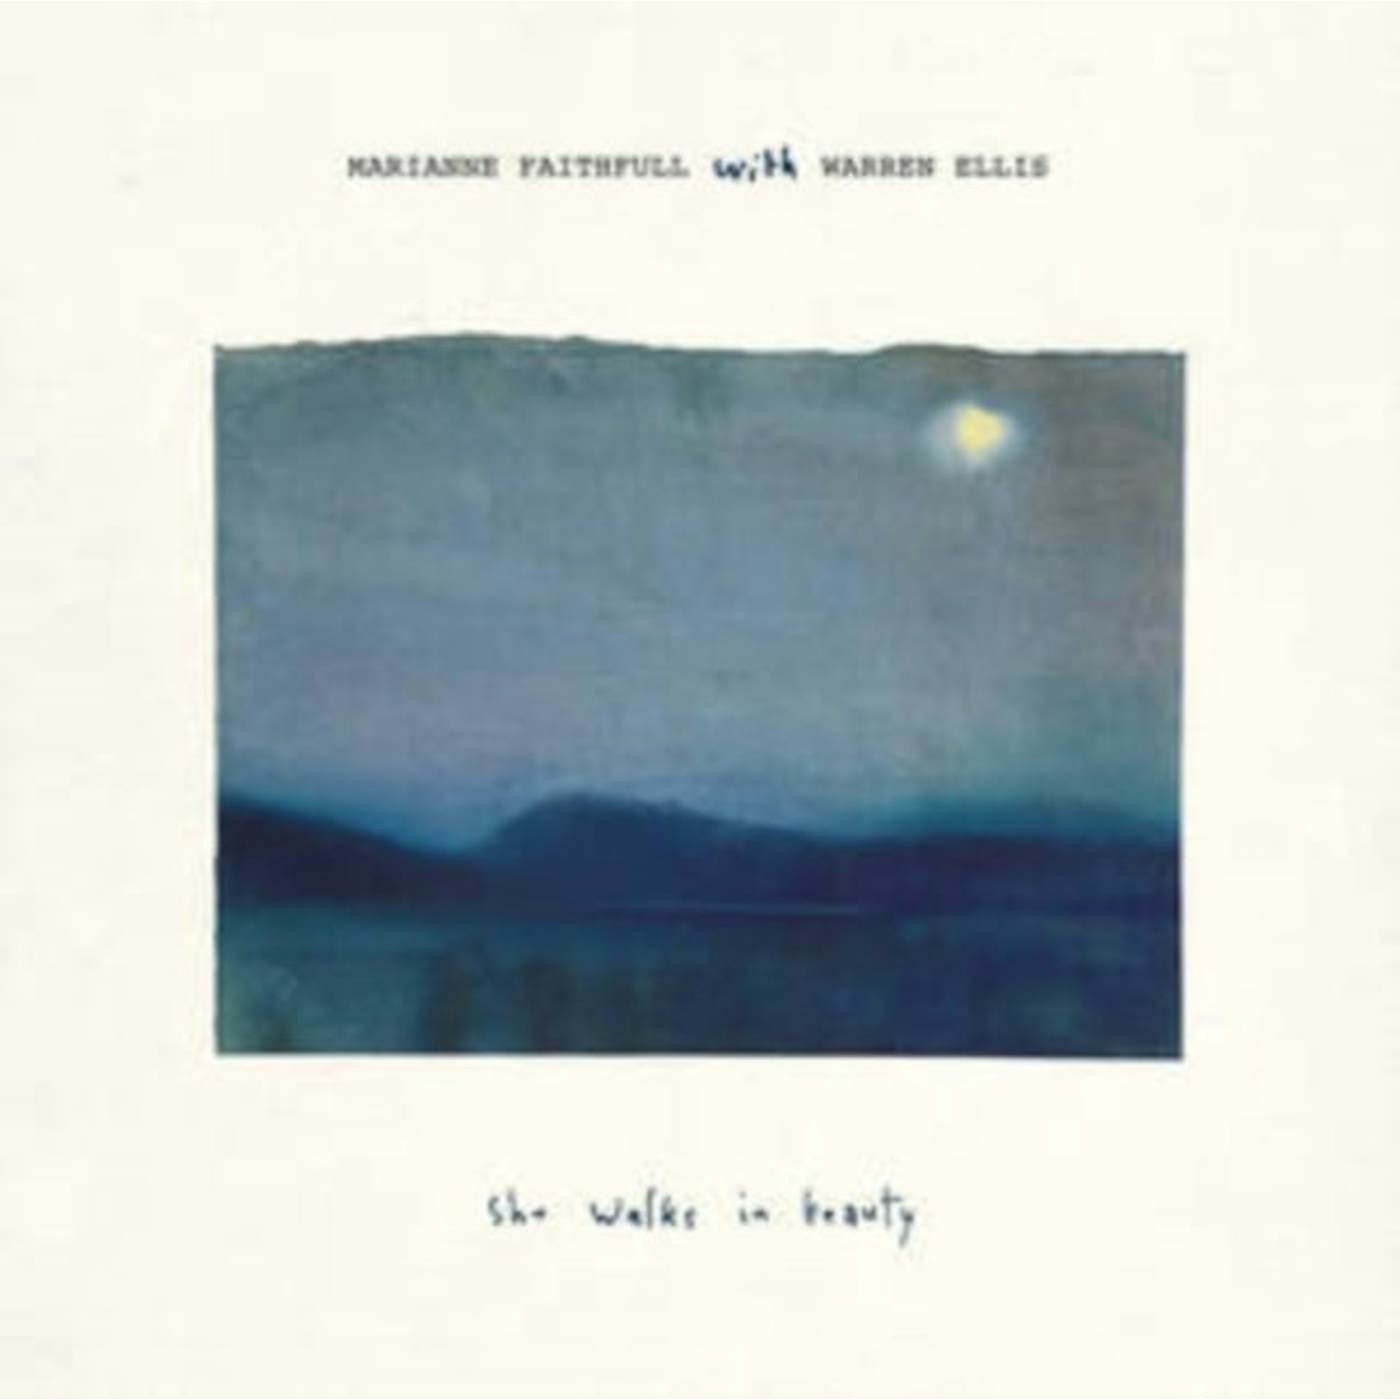 Marianne Faithfull LP Vinyl Record - She Walks In Beauty (With Warren Ellis)